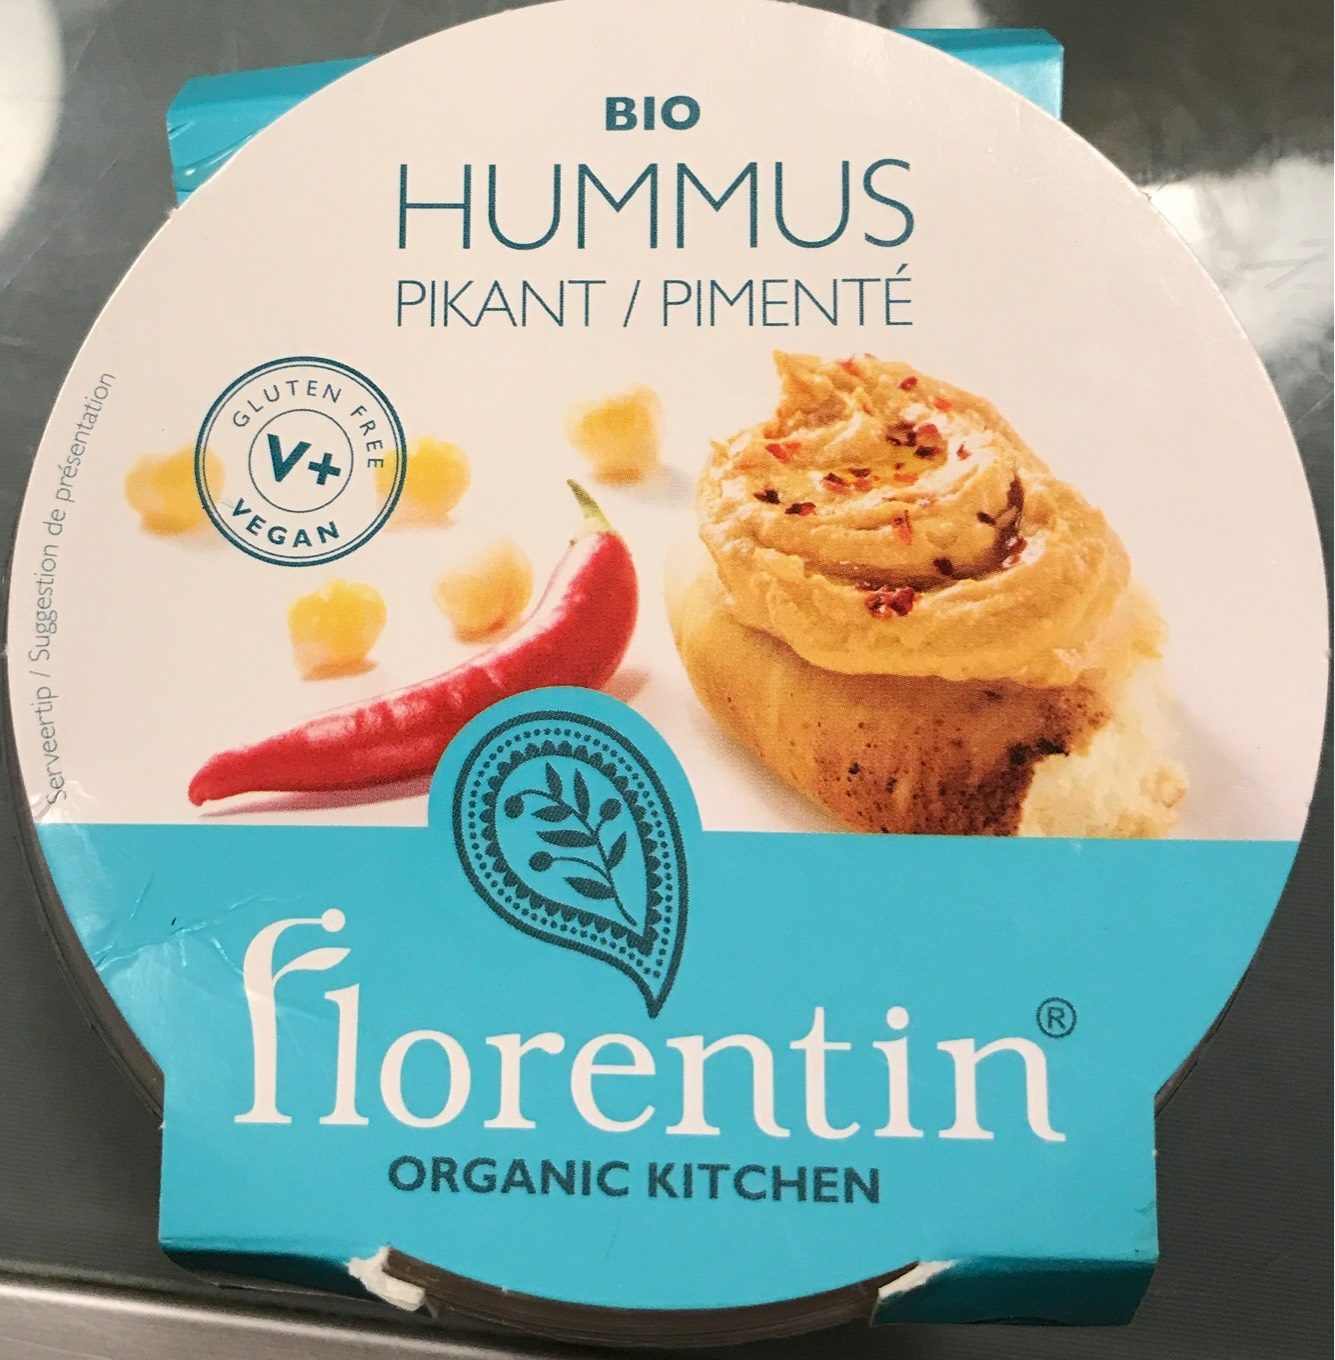 Hummus pimenté - Product - fr